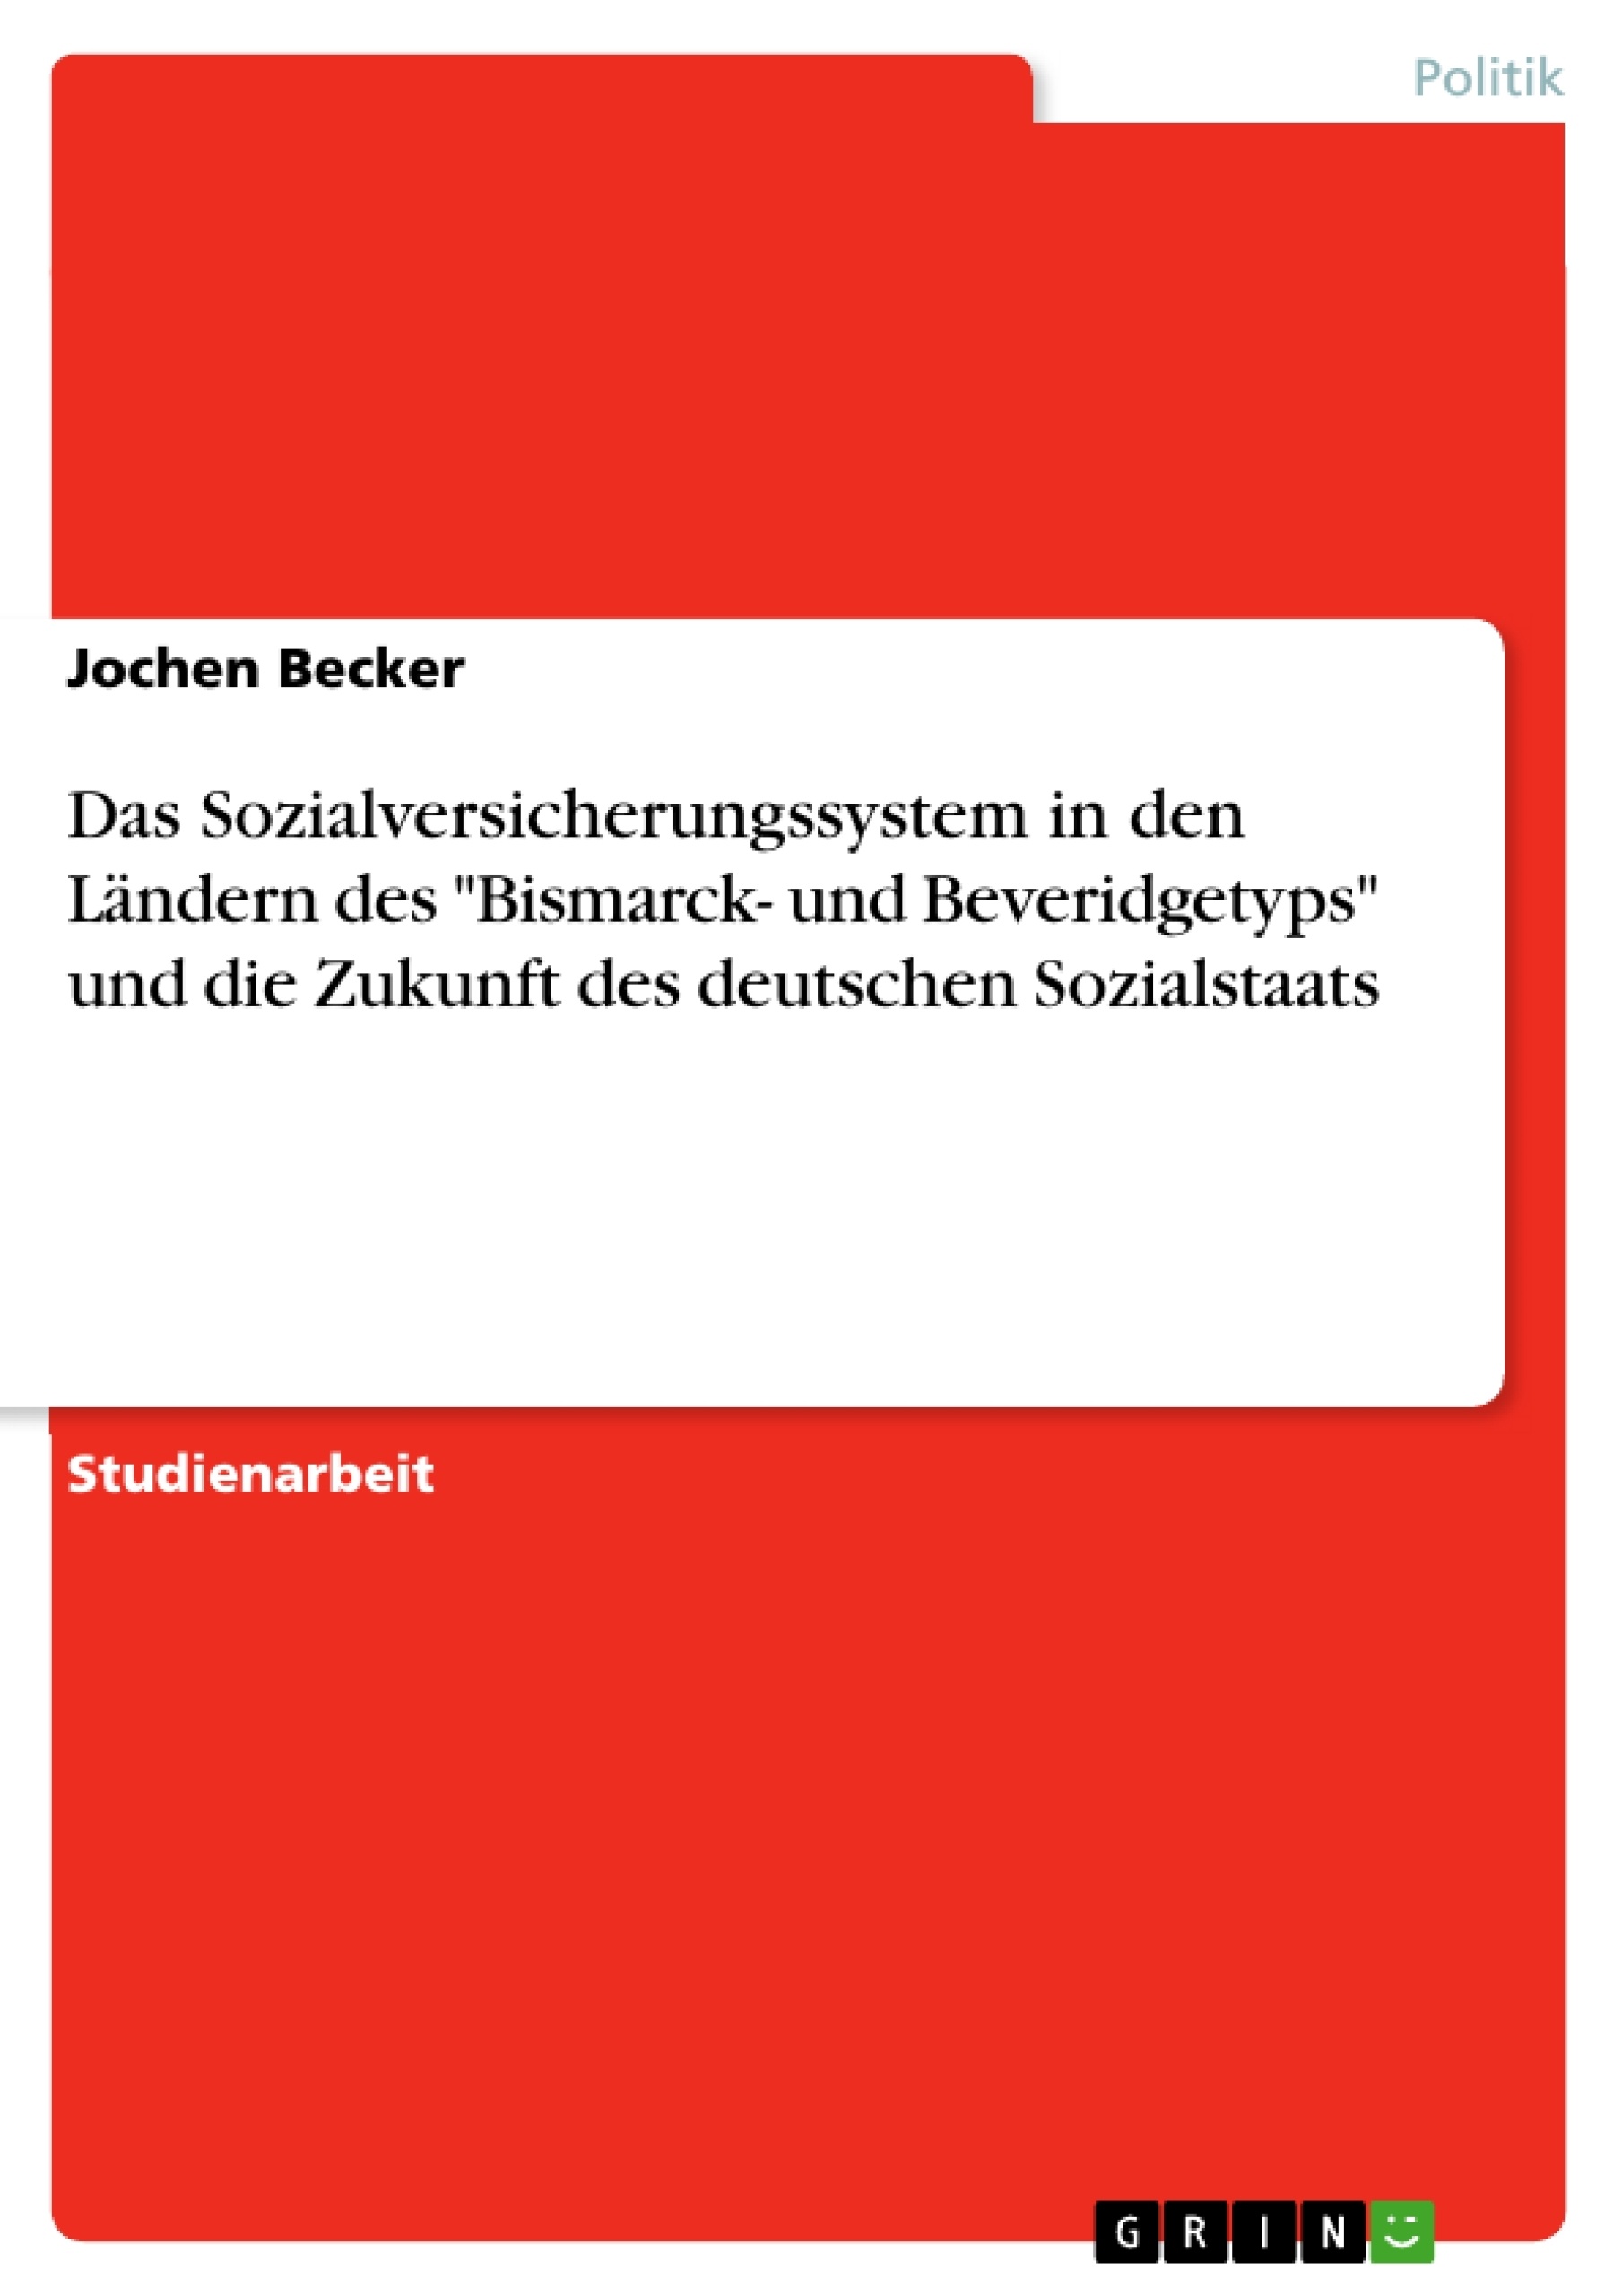 Titel: Das Sozialversicherungssystem in den Ländern des "Bismarck- und Beveridgetyps" und die Zukunft des deutschen Sozialstaats